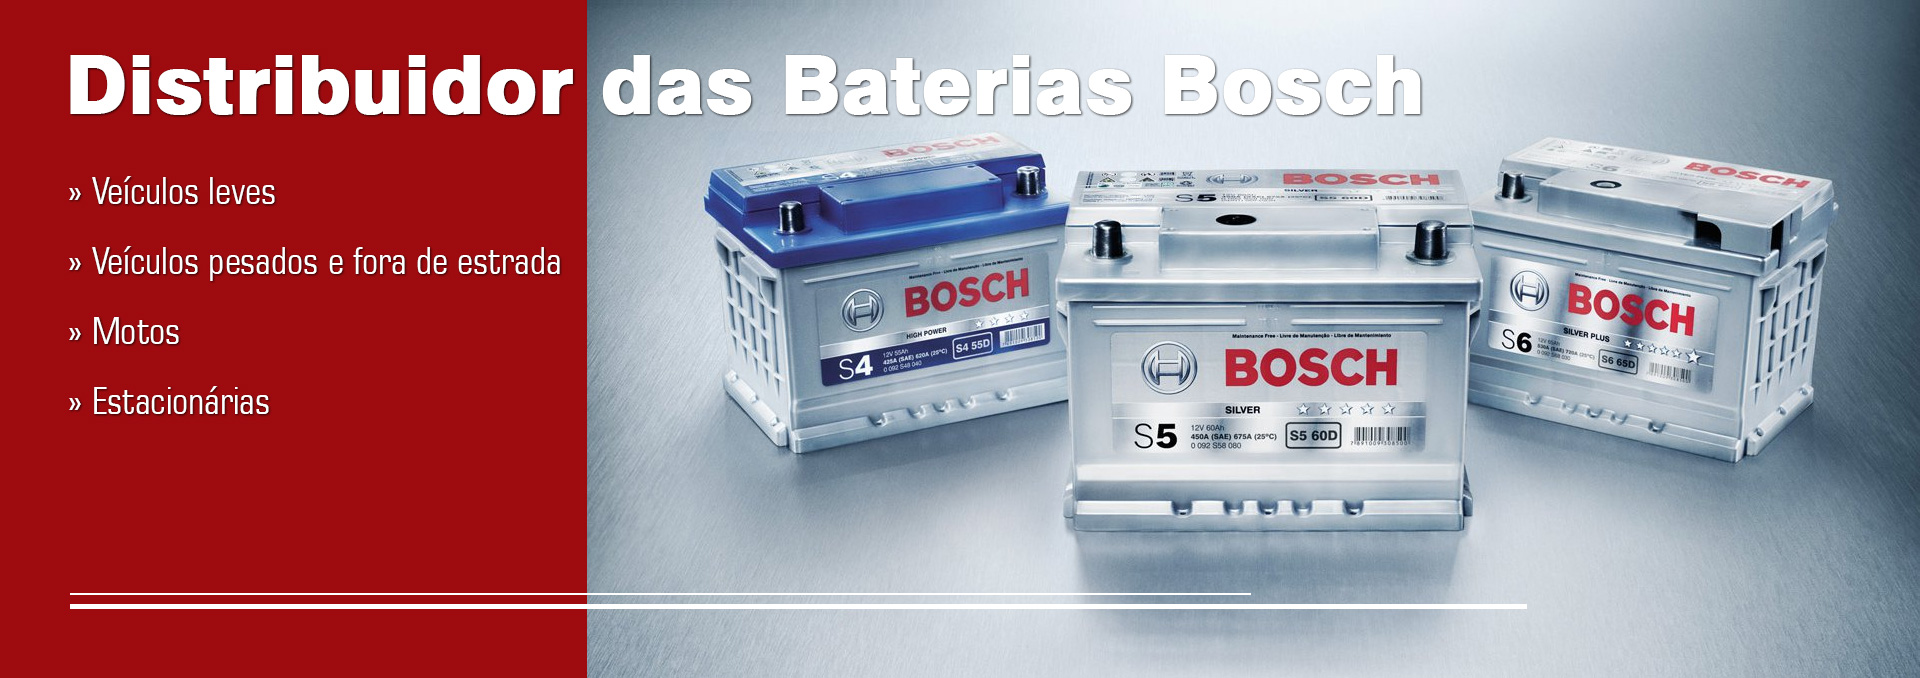 Distribuidor das Baterias Bosch